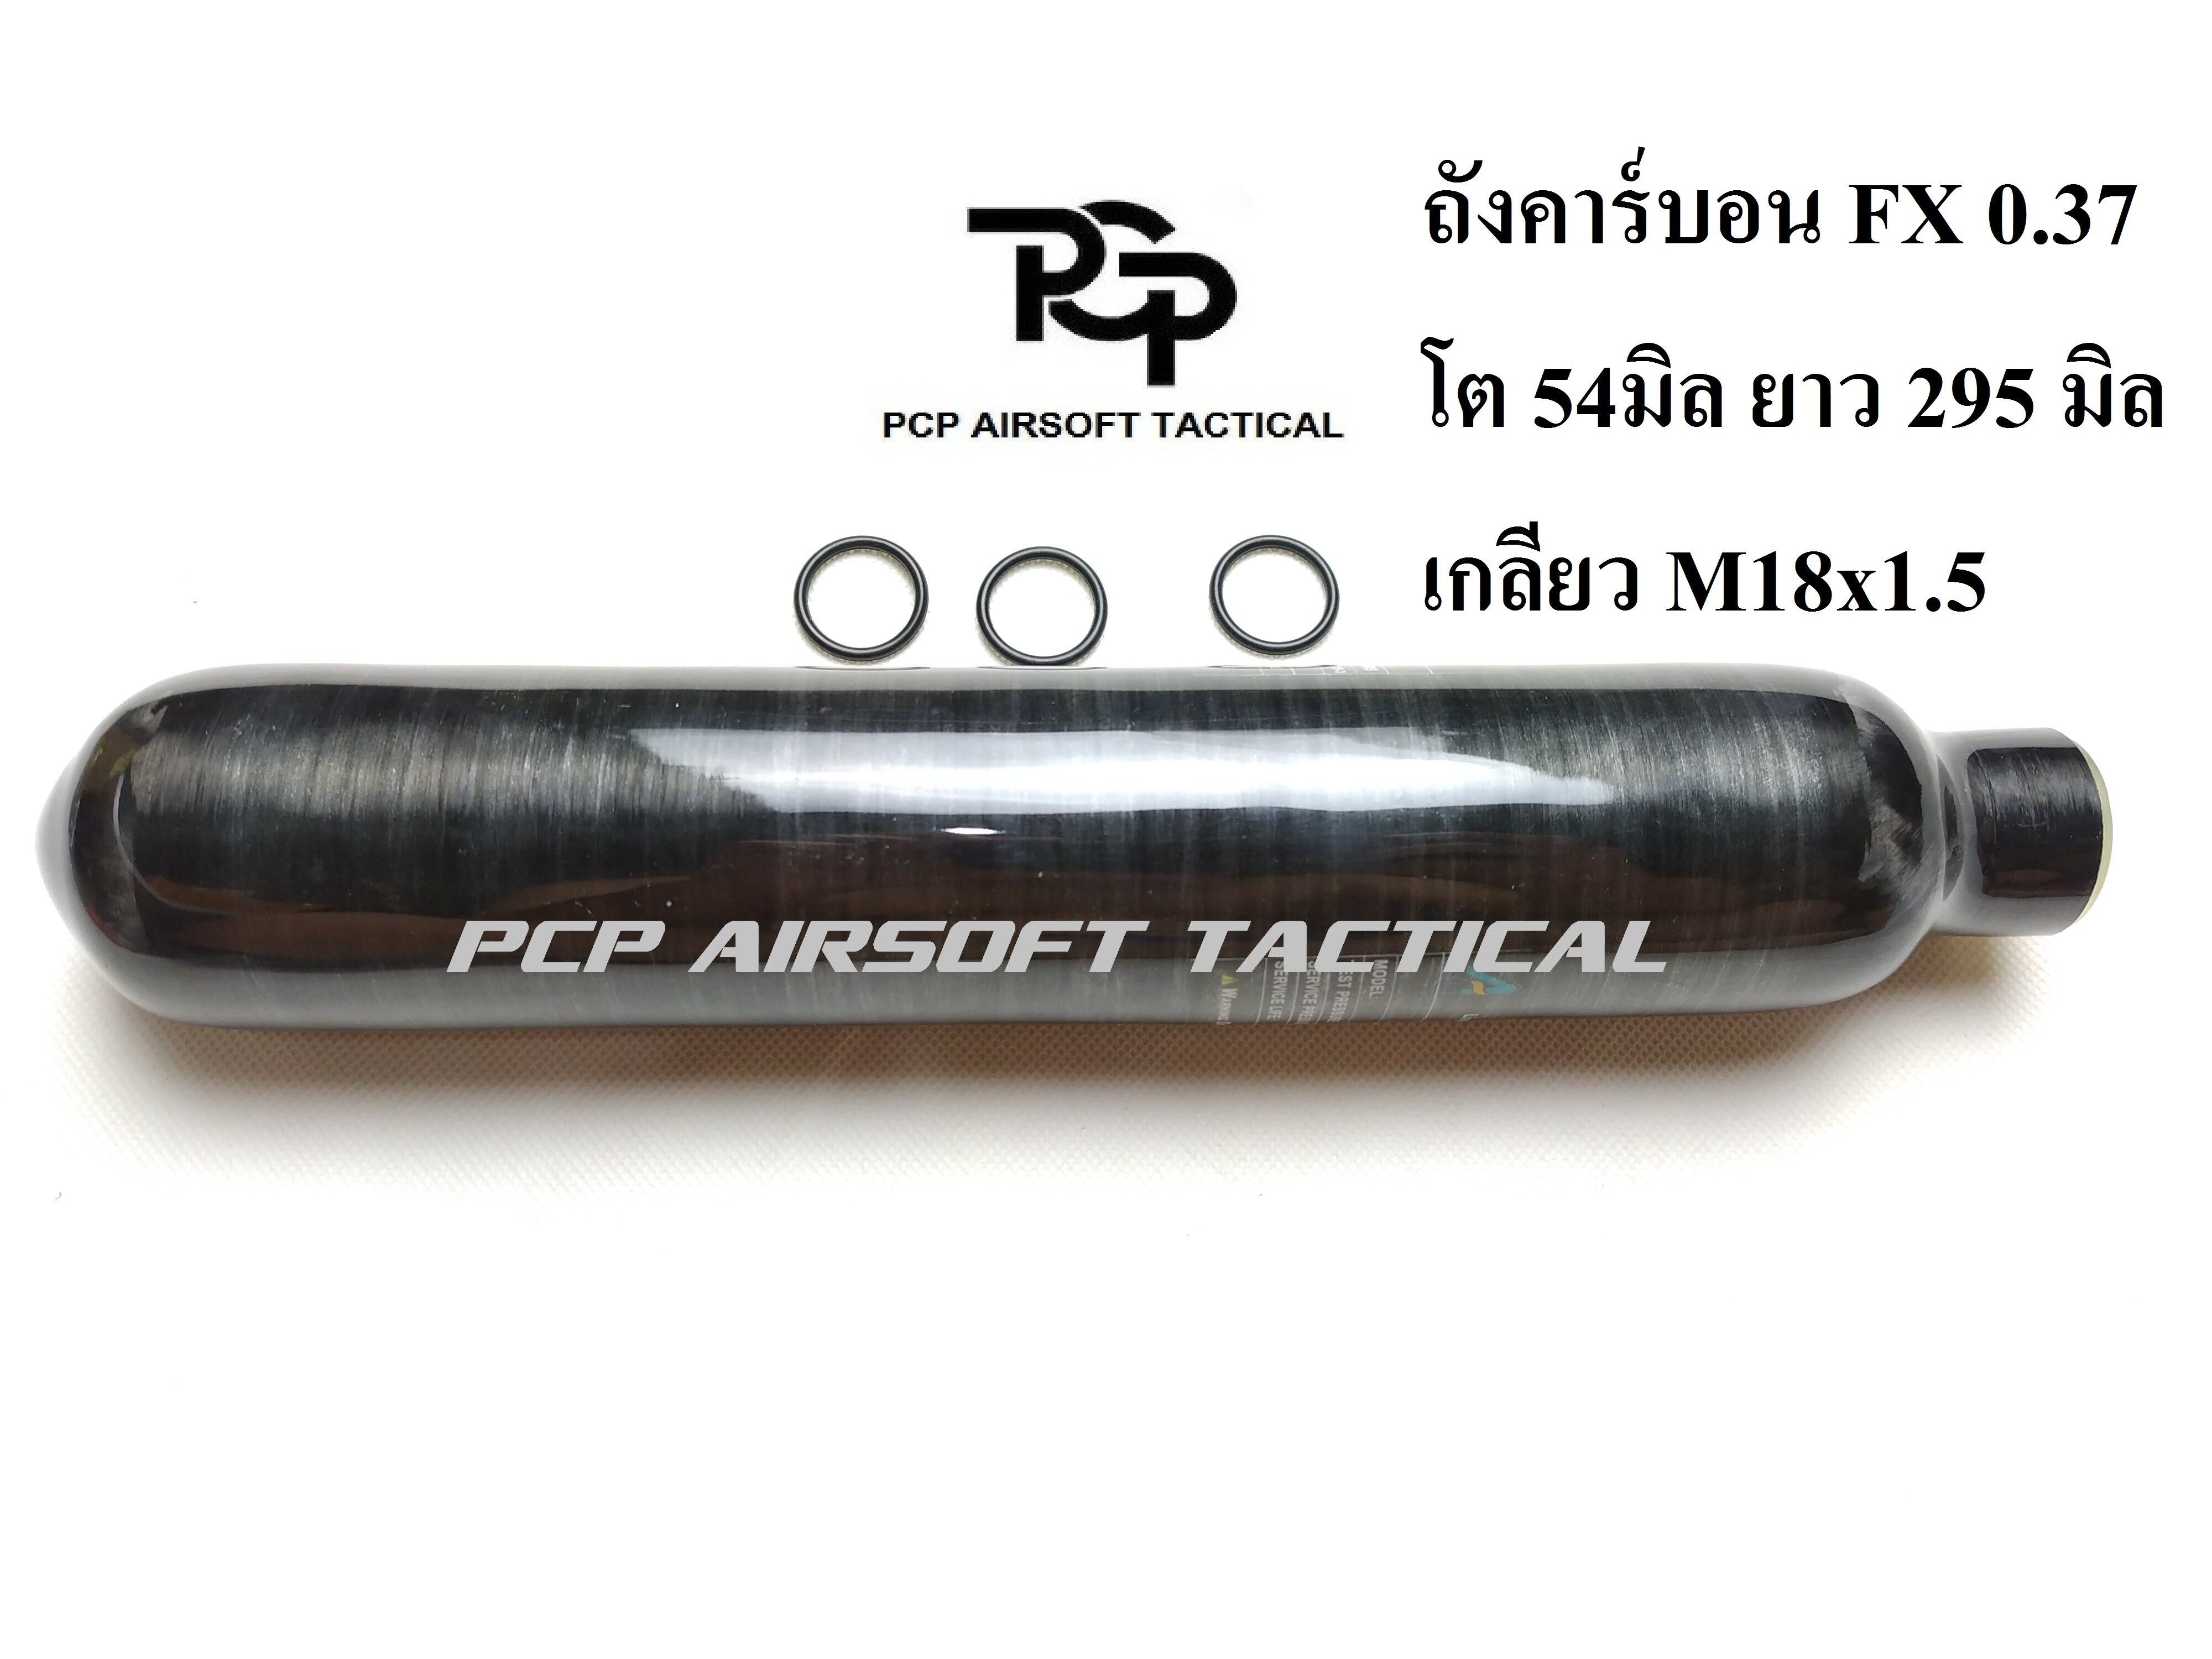 ถังคาร์บอน สีดำ M18x1.5 4350psi 300 bar Paintball,PCP Carbon Tank Air Cyclinder Bottle Black